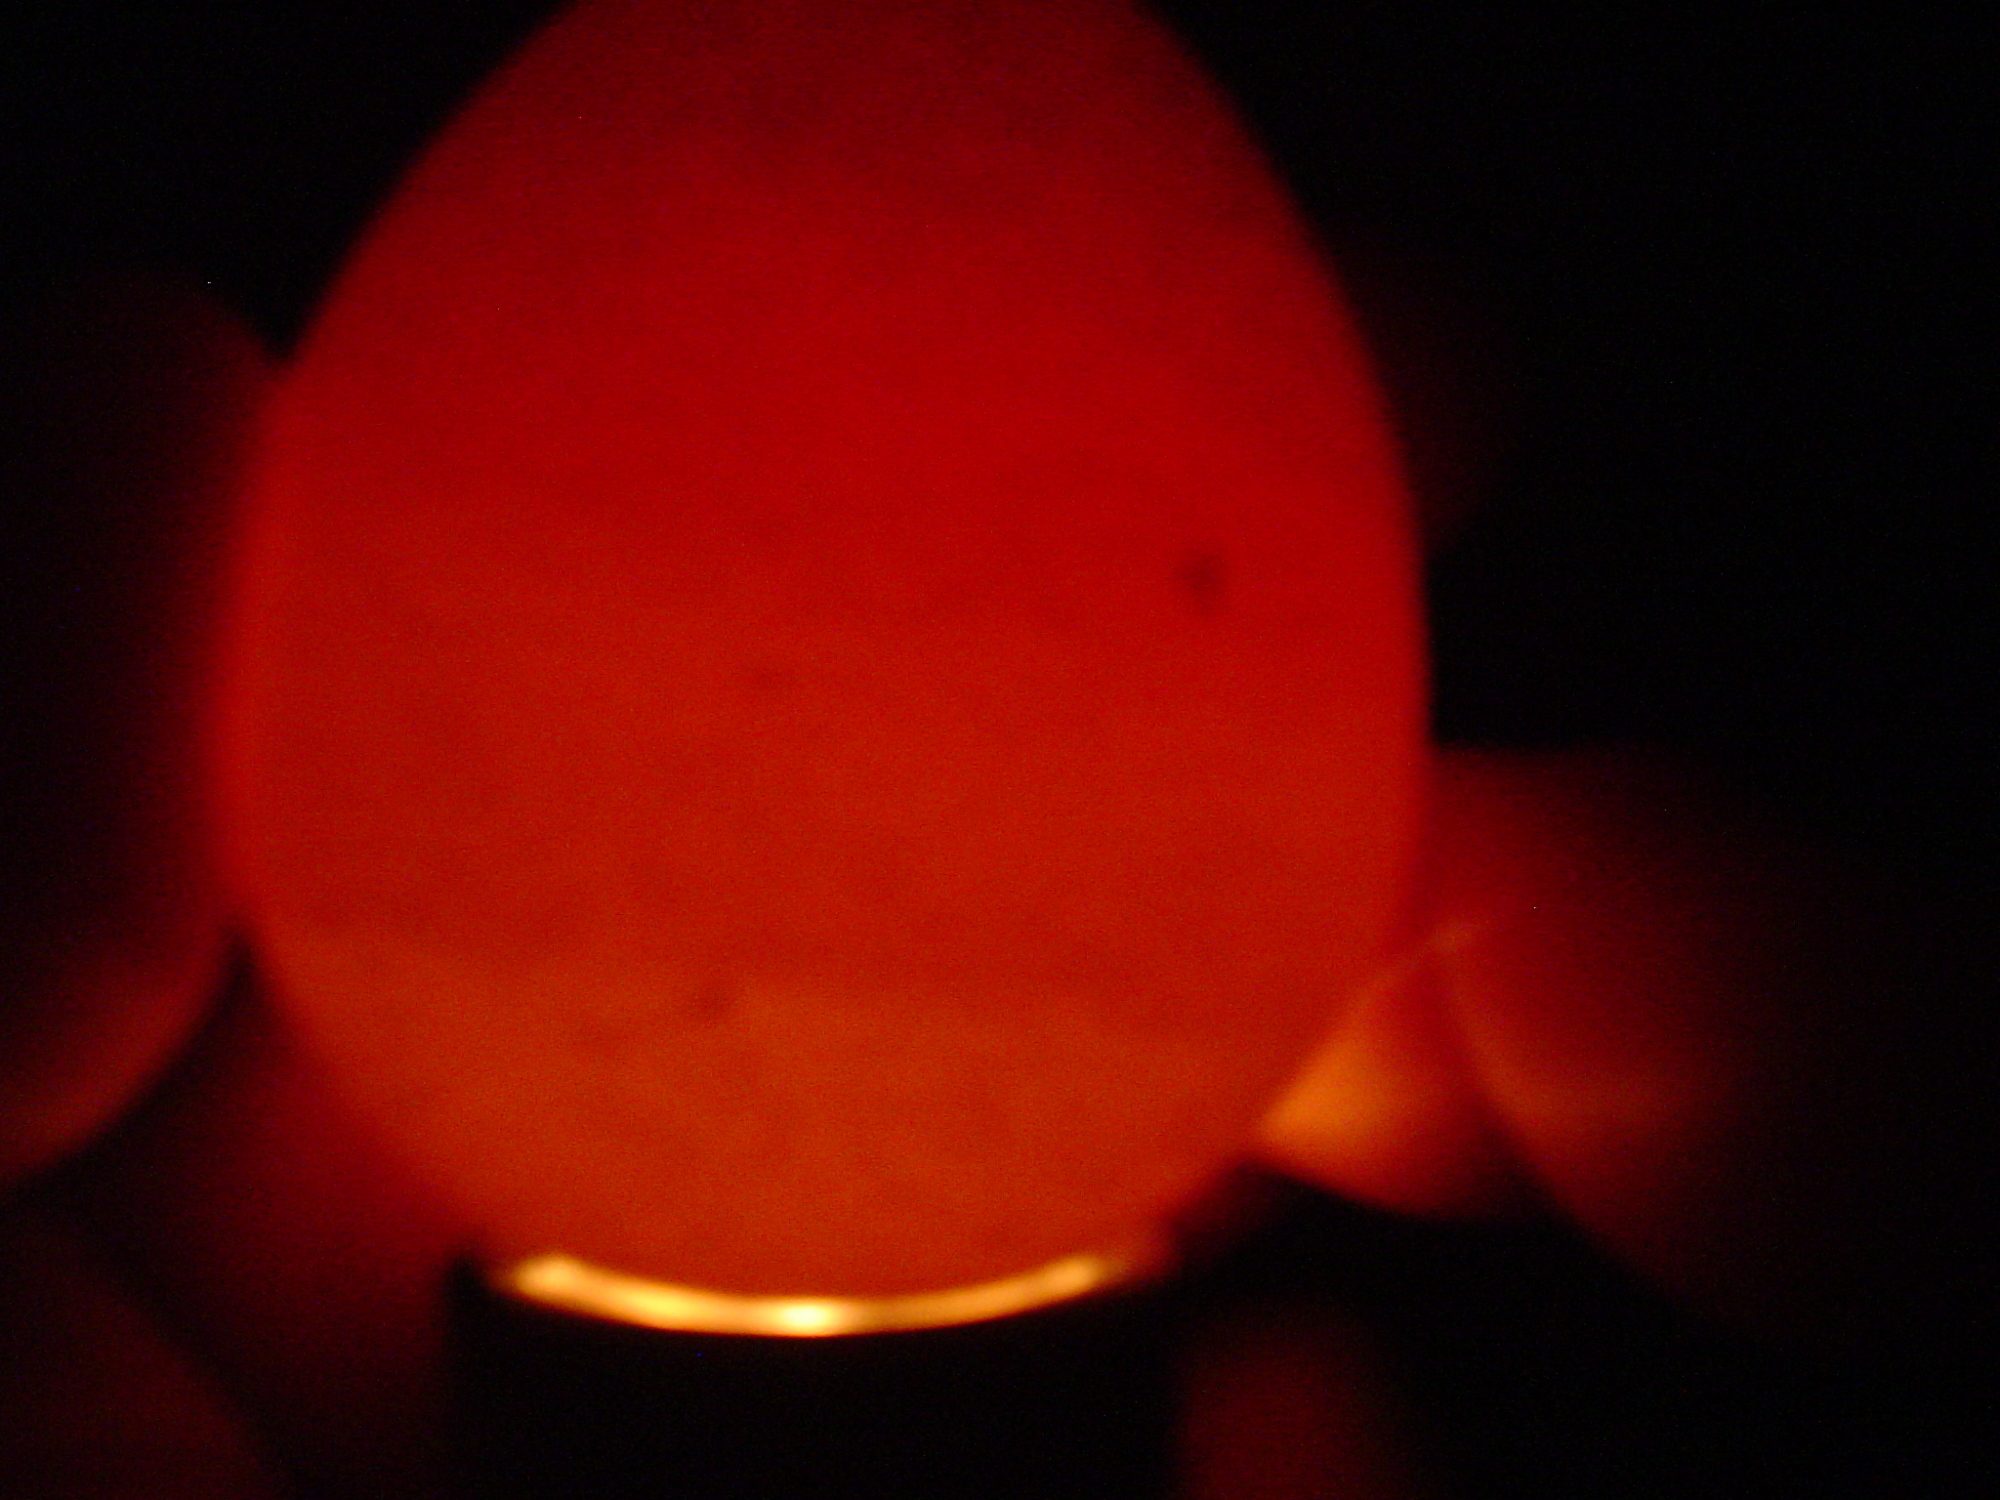 # 6 egg looking through the air sac